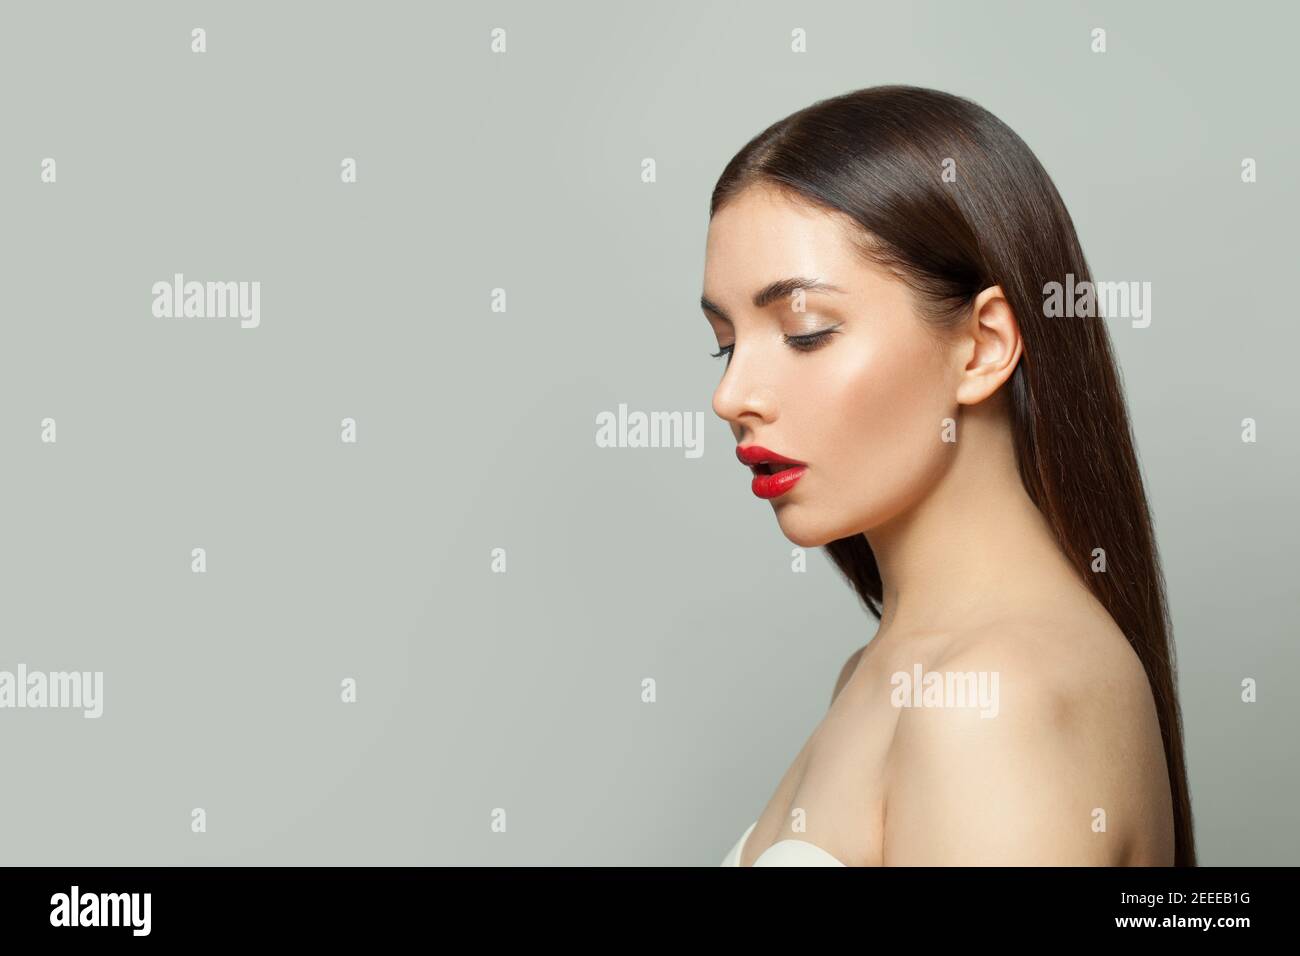 Donna sana con trucco e capelli lisci su sfondo bianco Foto Stock